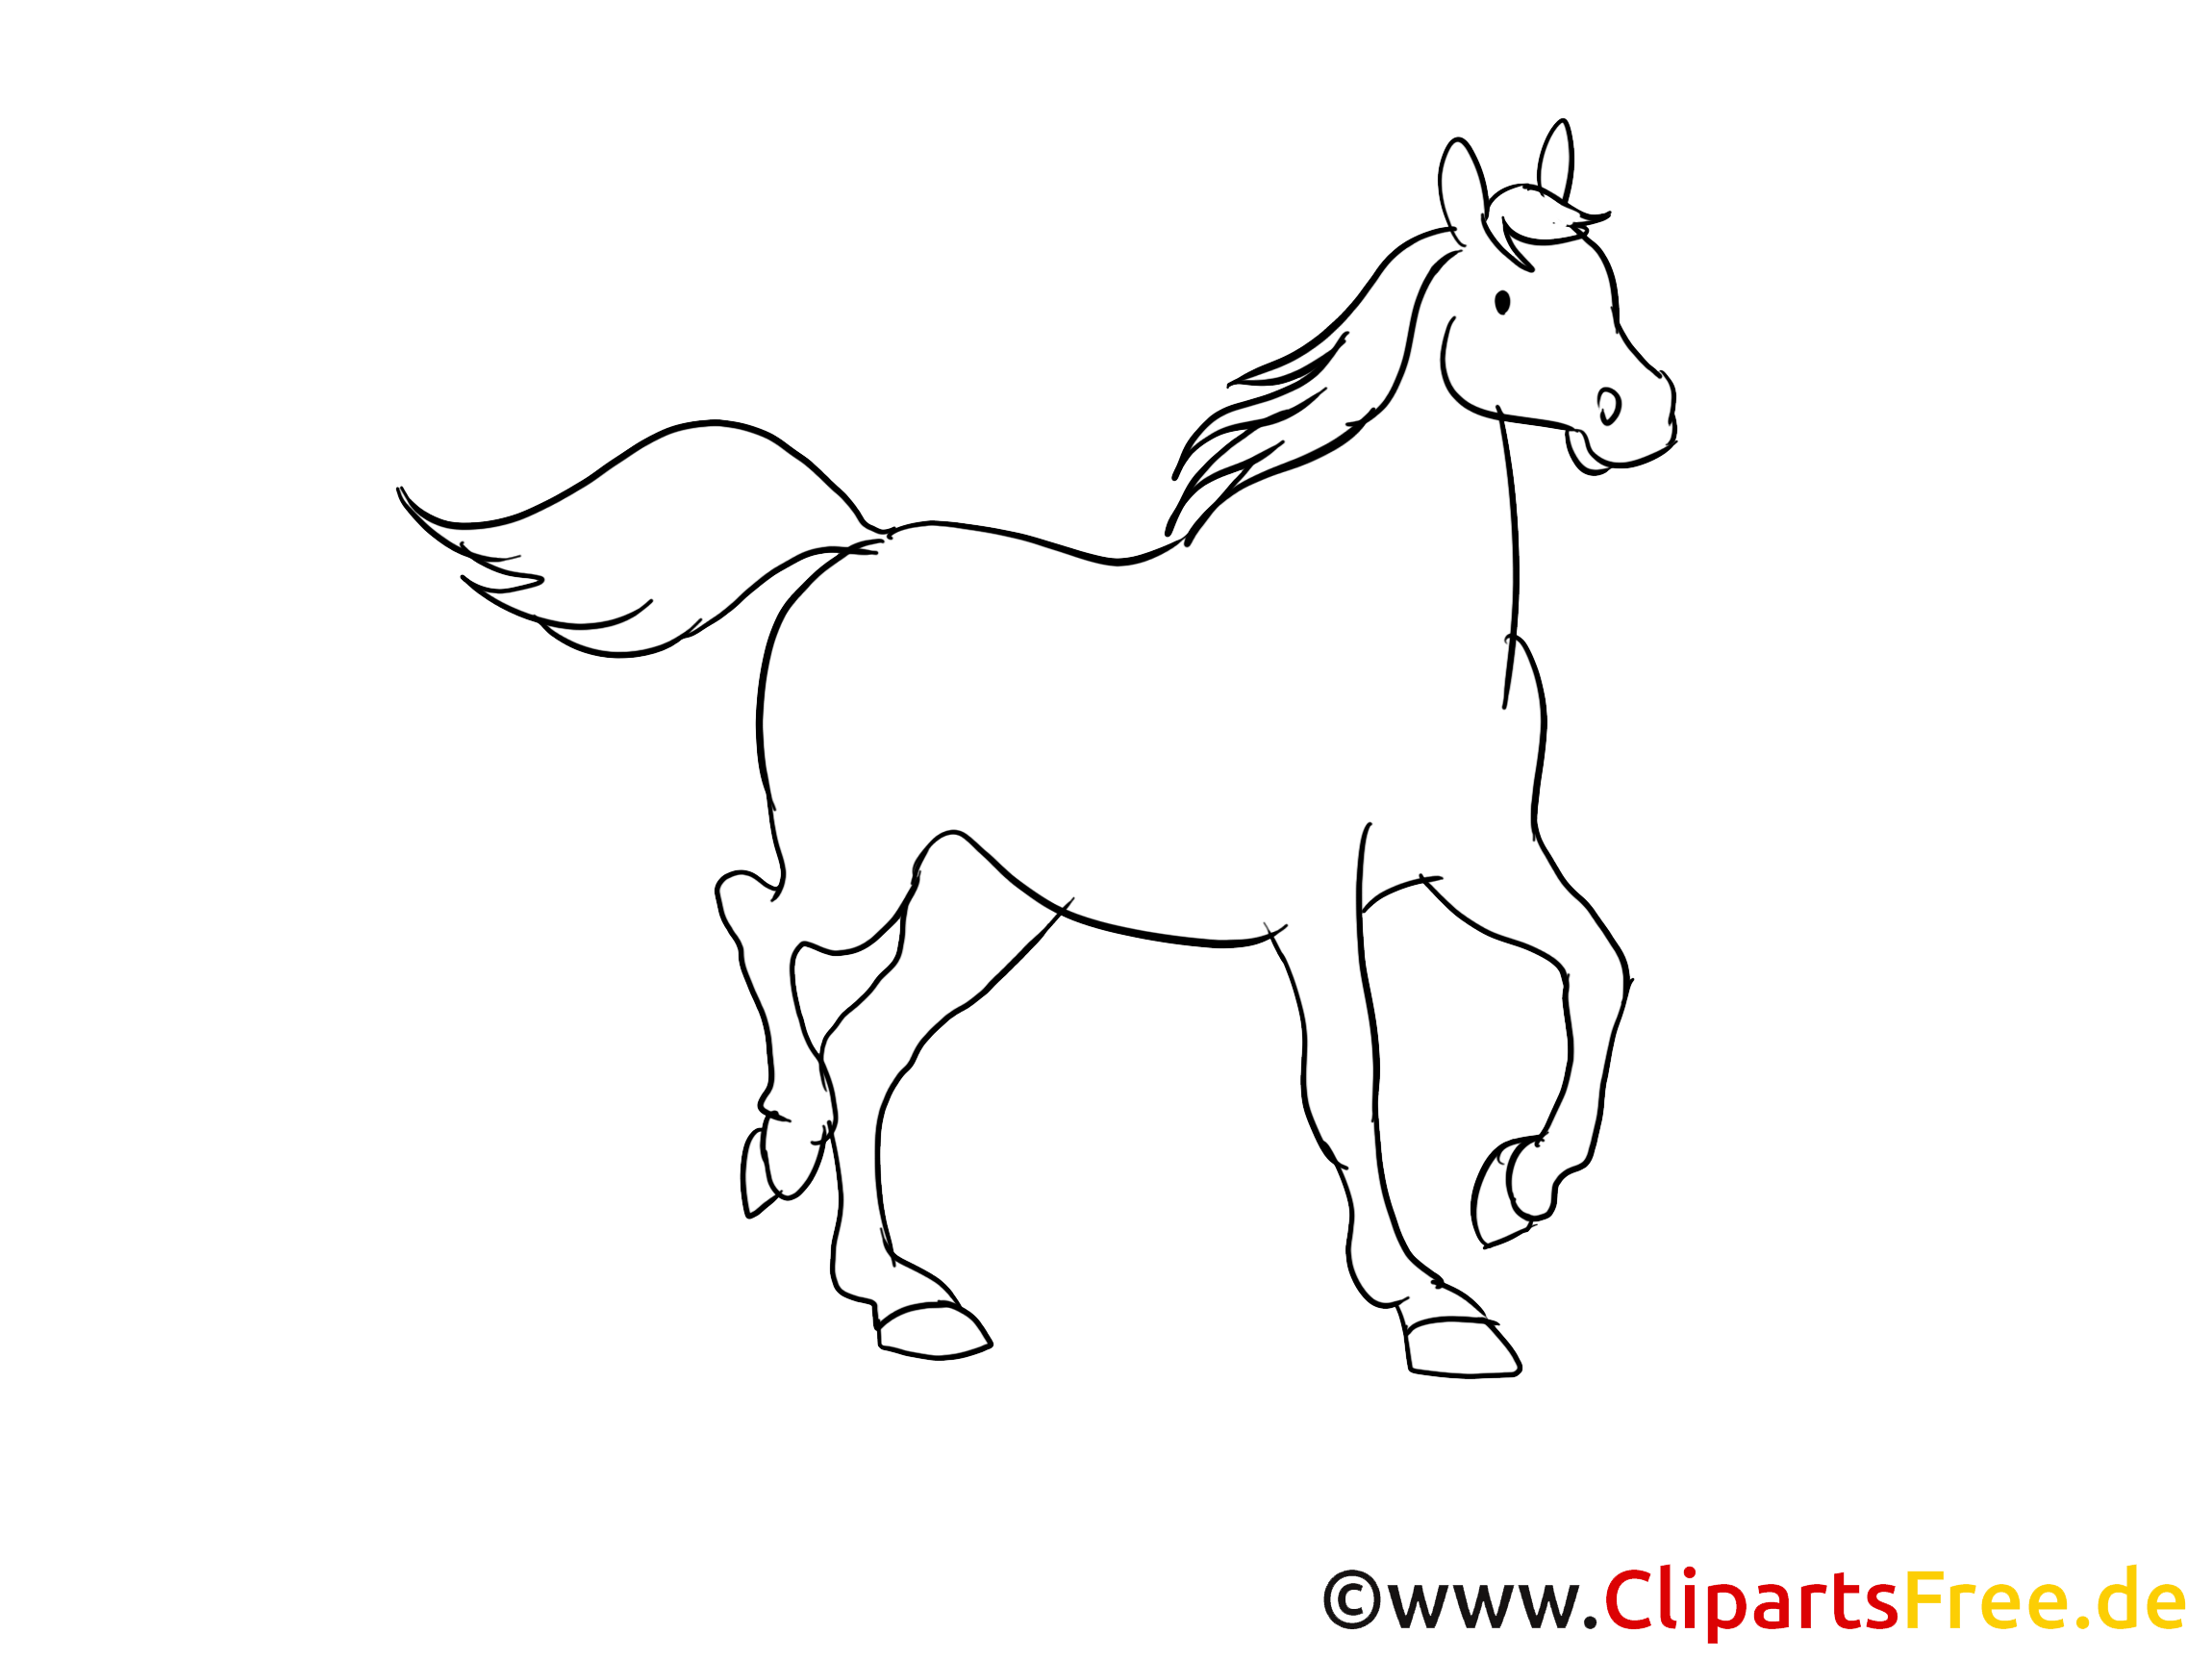 Clipart Pferd schwarz weiß k